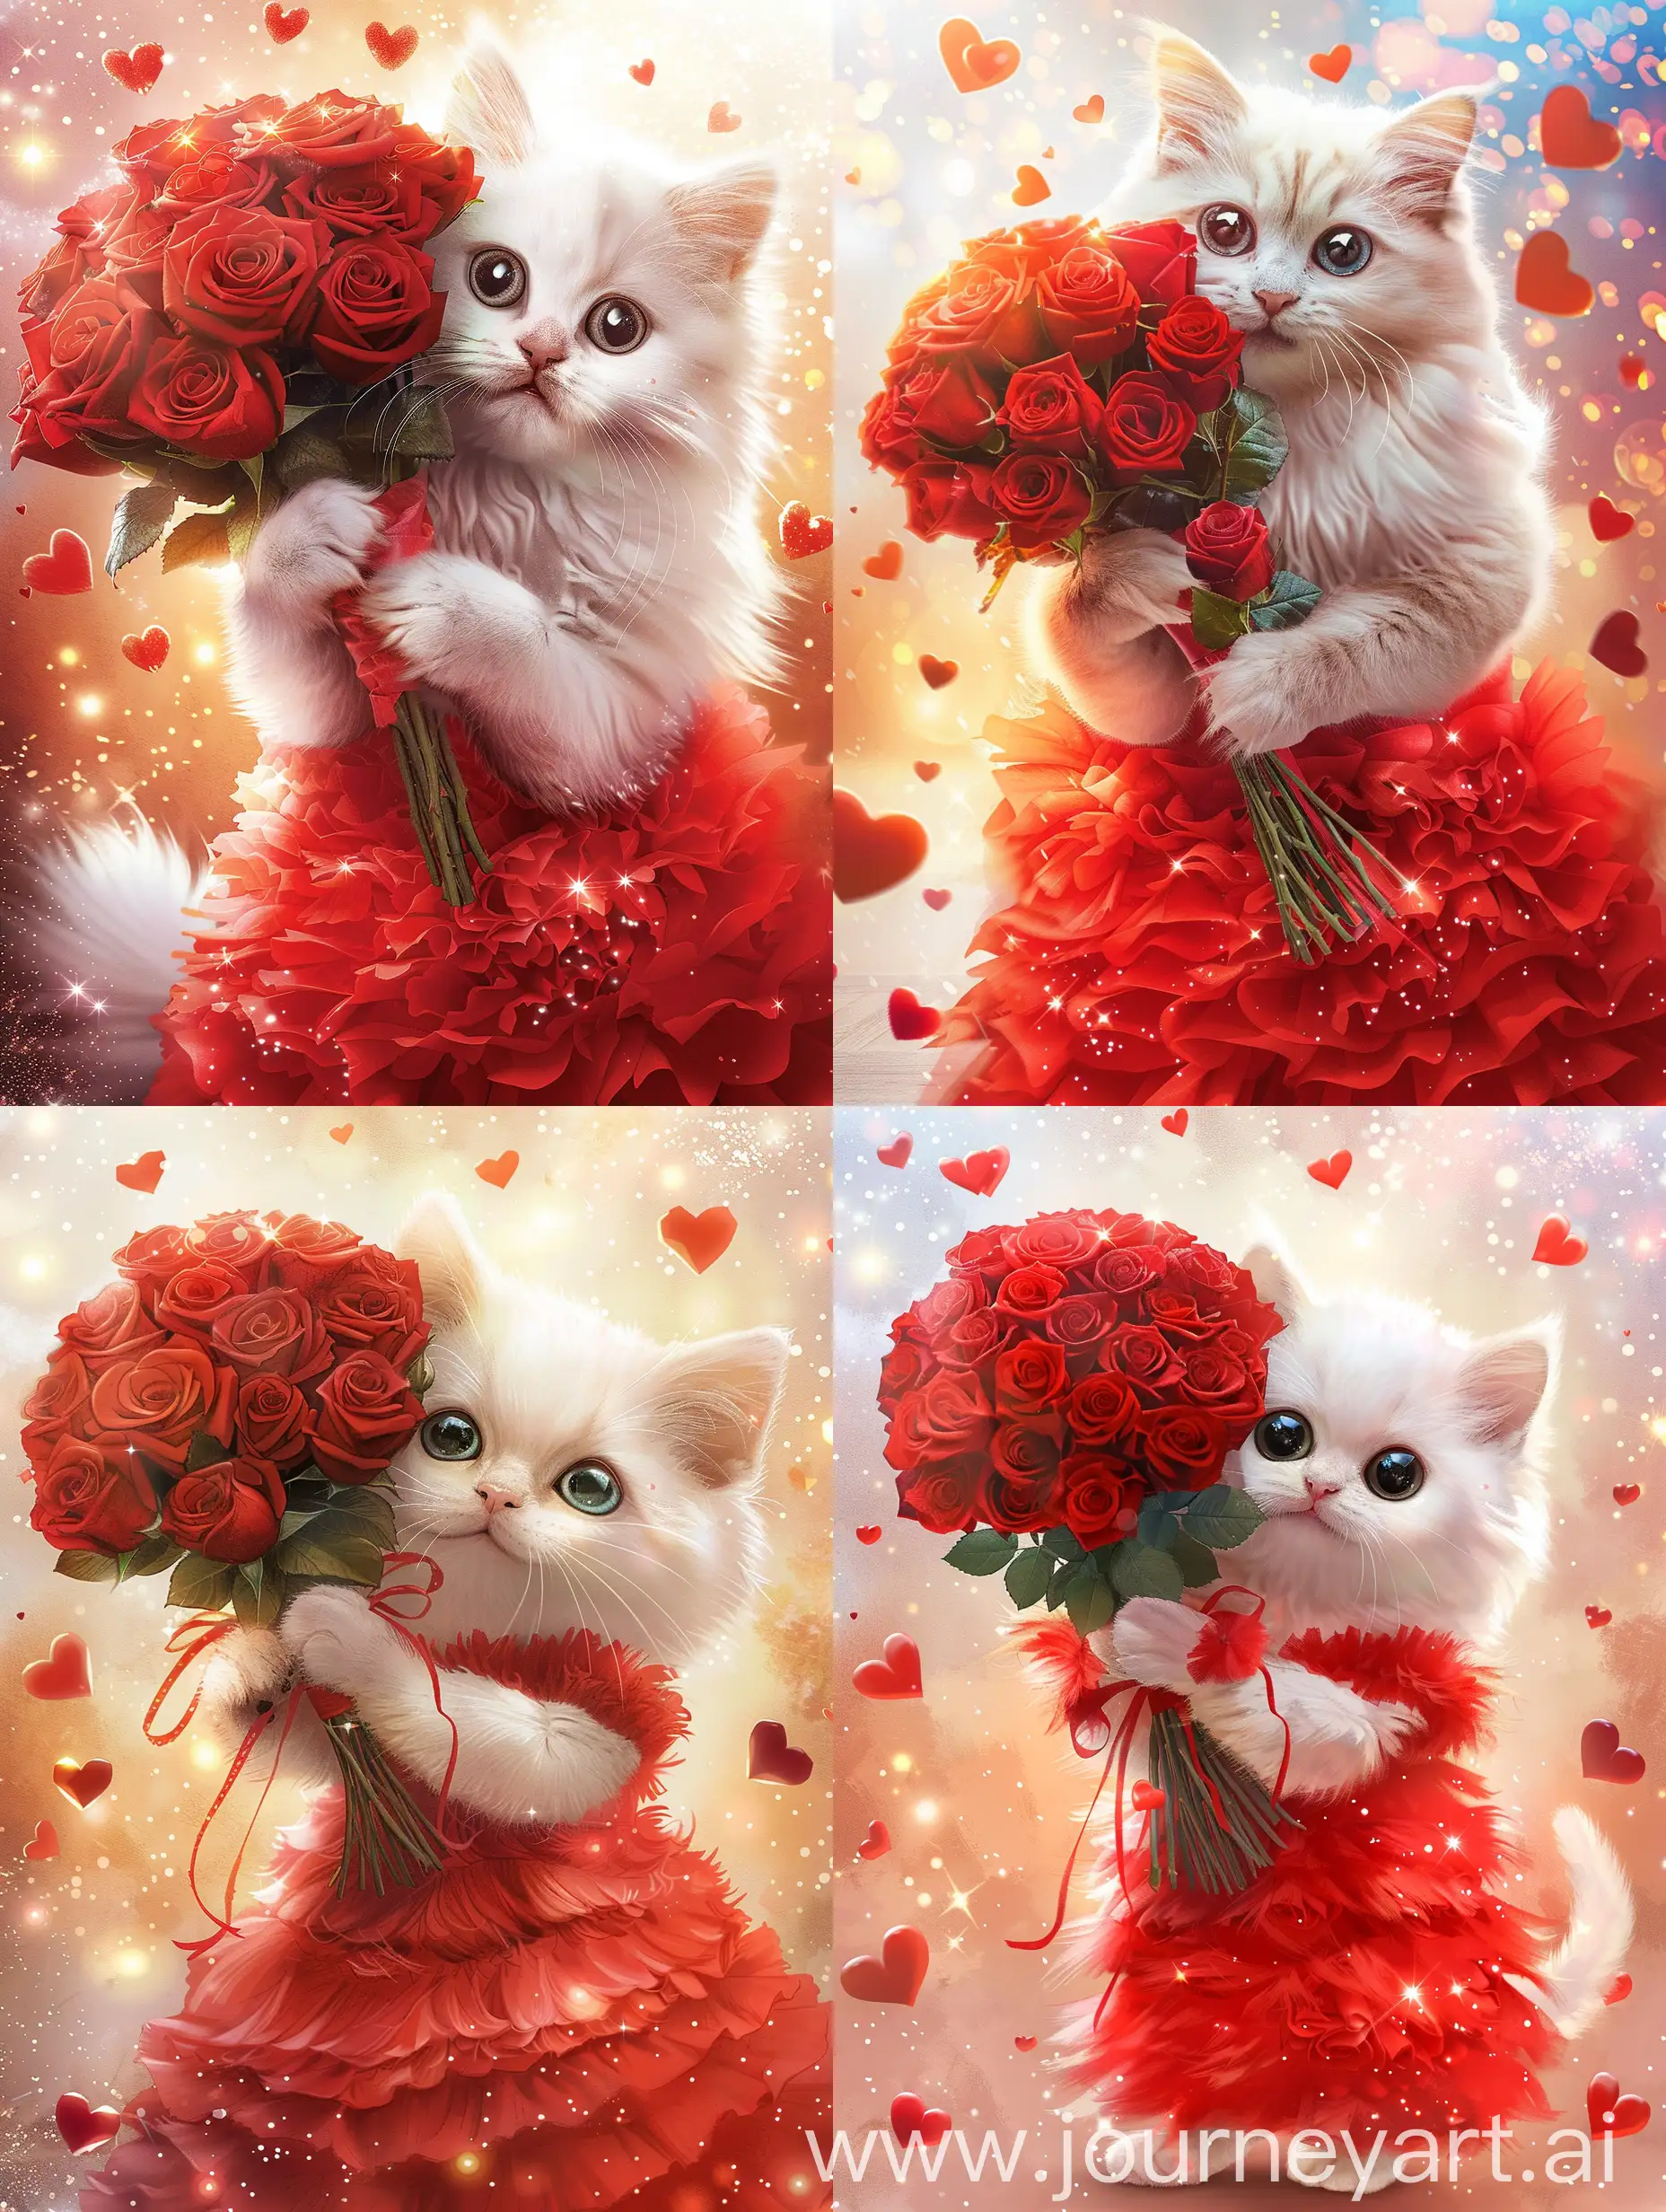 антропоморфная реалистичная улыбающаяся белая кошка с большими глазами одетая в ярко-красное длинное пышное платье, в полный рост, держит в своей левой лапке огромный букет красных роз, на фоне блёсток и летающих сердечек, рисунок акварелью, яркое освещение, высокое разрешение, высокая детализация, 1/505s, ISO 1000, f/16, 32k